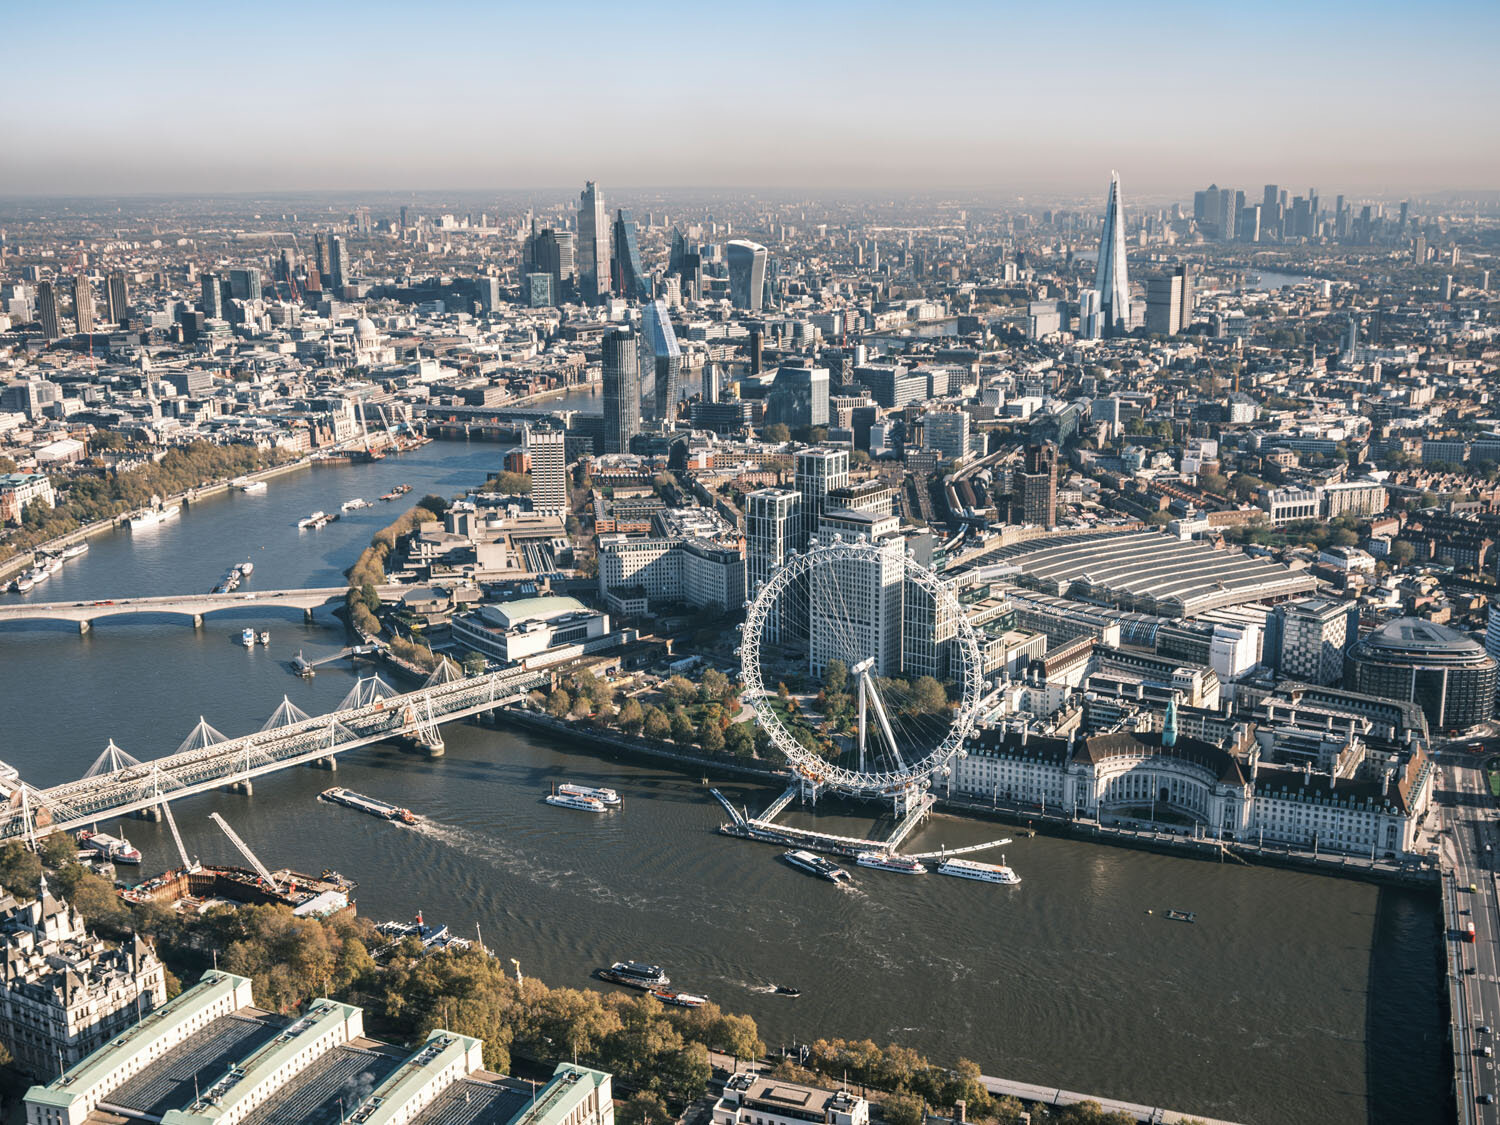  London Aerial View - River Thames / London Eye 